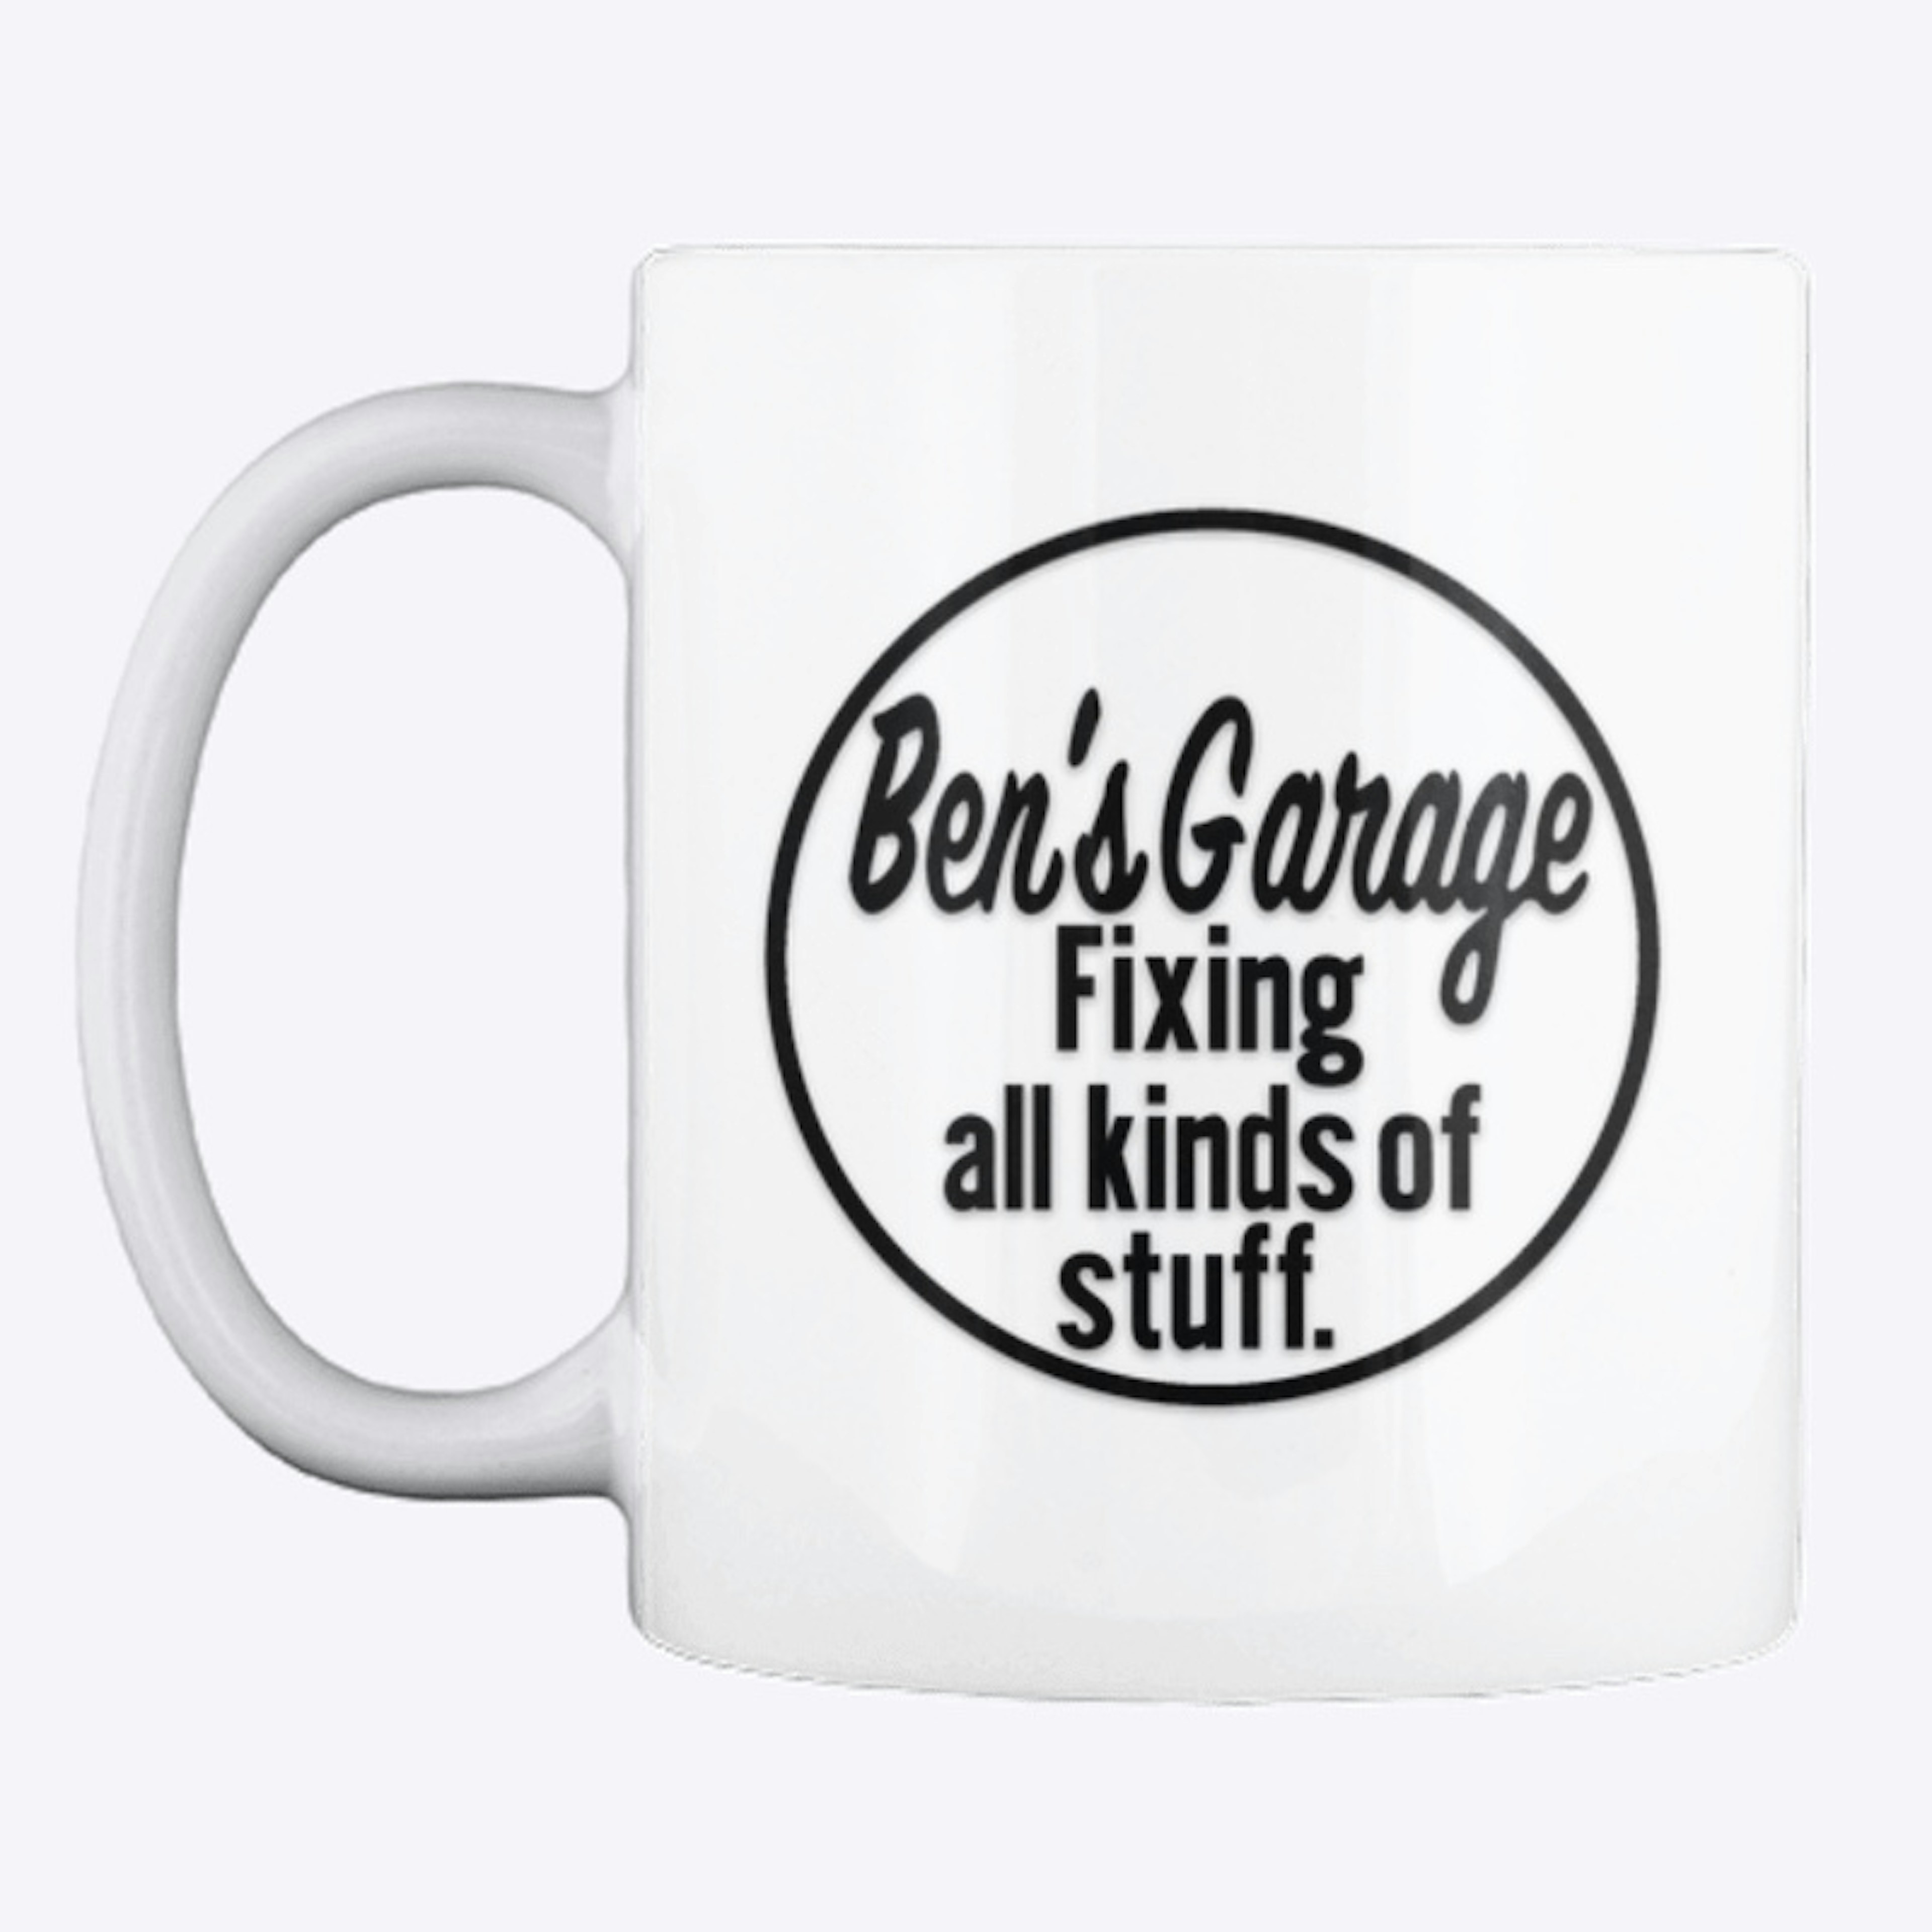 Ben's Garage Mug